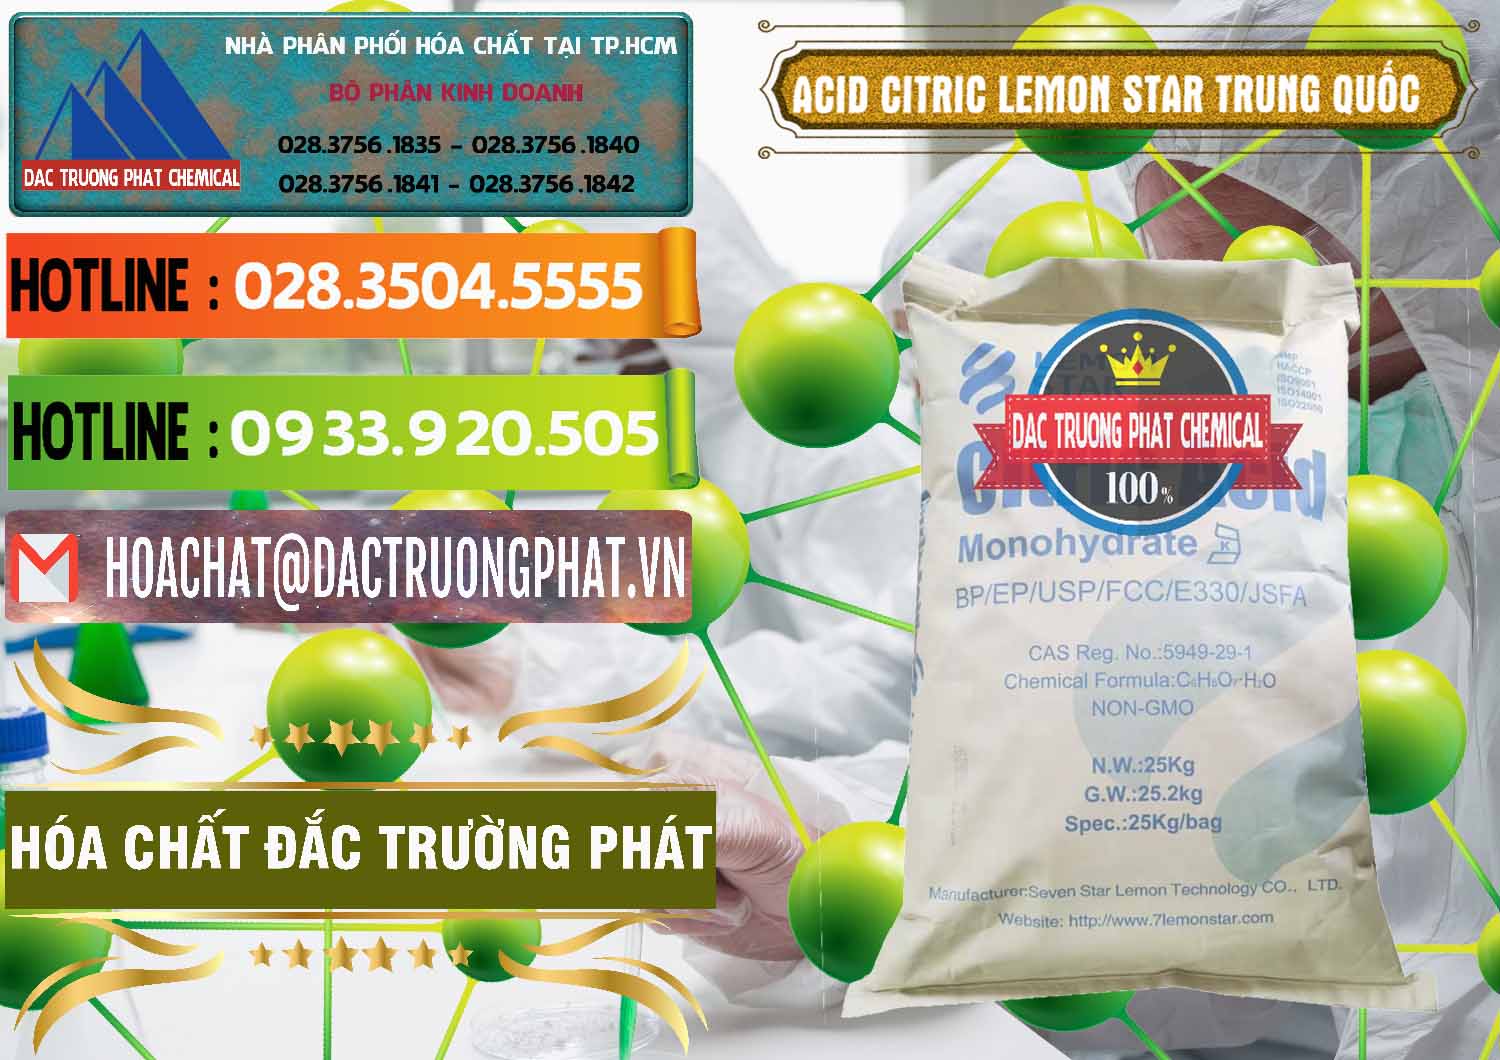 Nơi chuyên kinh doanh ( bán ) Acid Citric - Axit Citric BP/EP/USP/FCC/E330 Lemon Star Trung Quốc China - 0286 - Đơn vị cung cấp và kinh doanh hóa chất tại TP.HCM - cungcaphoachat.com.vn